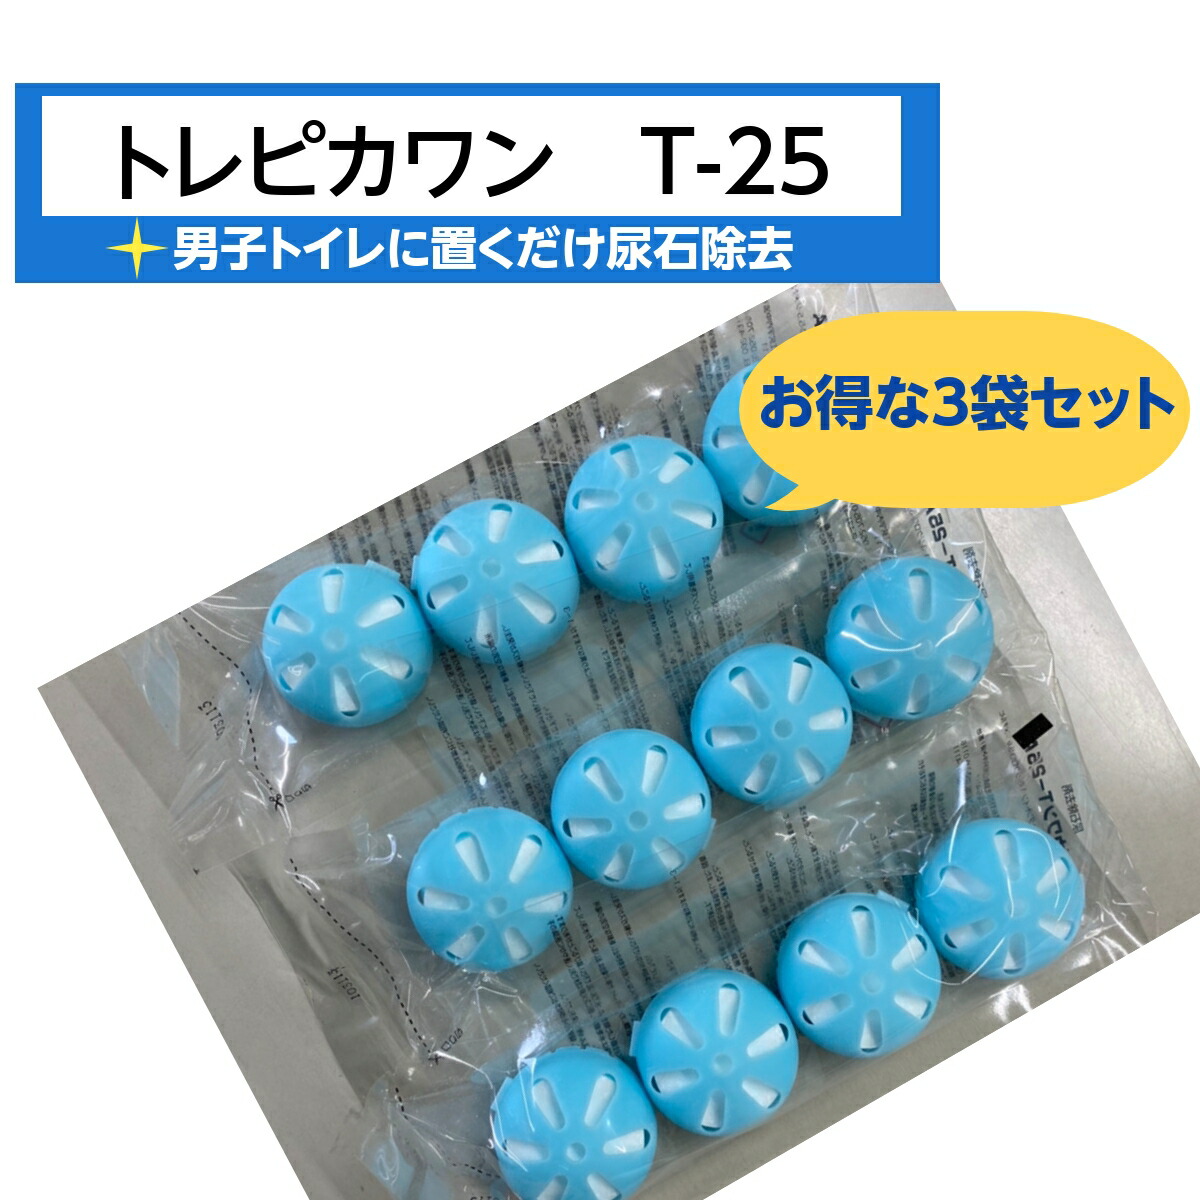 日本最大級の品揃え 尿石除去 尿石防止剤 トレピカワンT-50A 5個入り袋 小便器の悪臭 つまり対策に トイレ洗浄剤 防除剤 